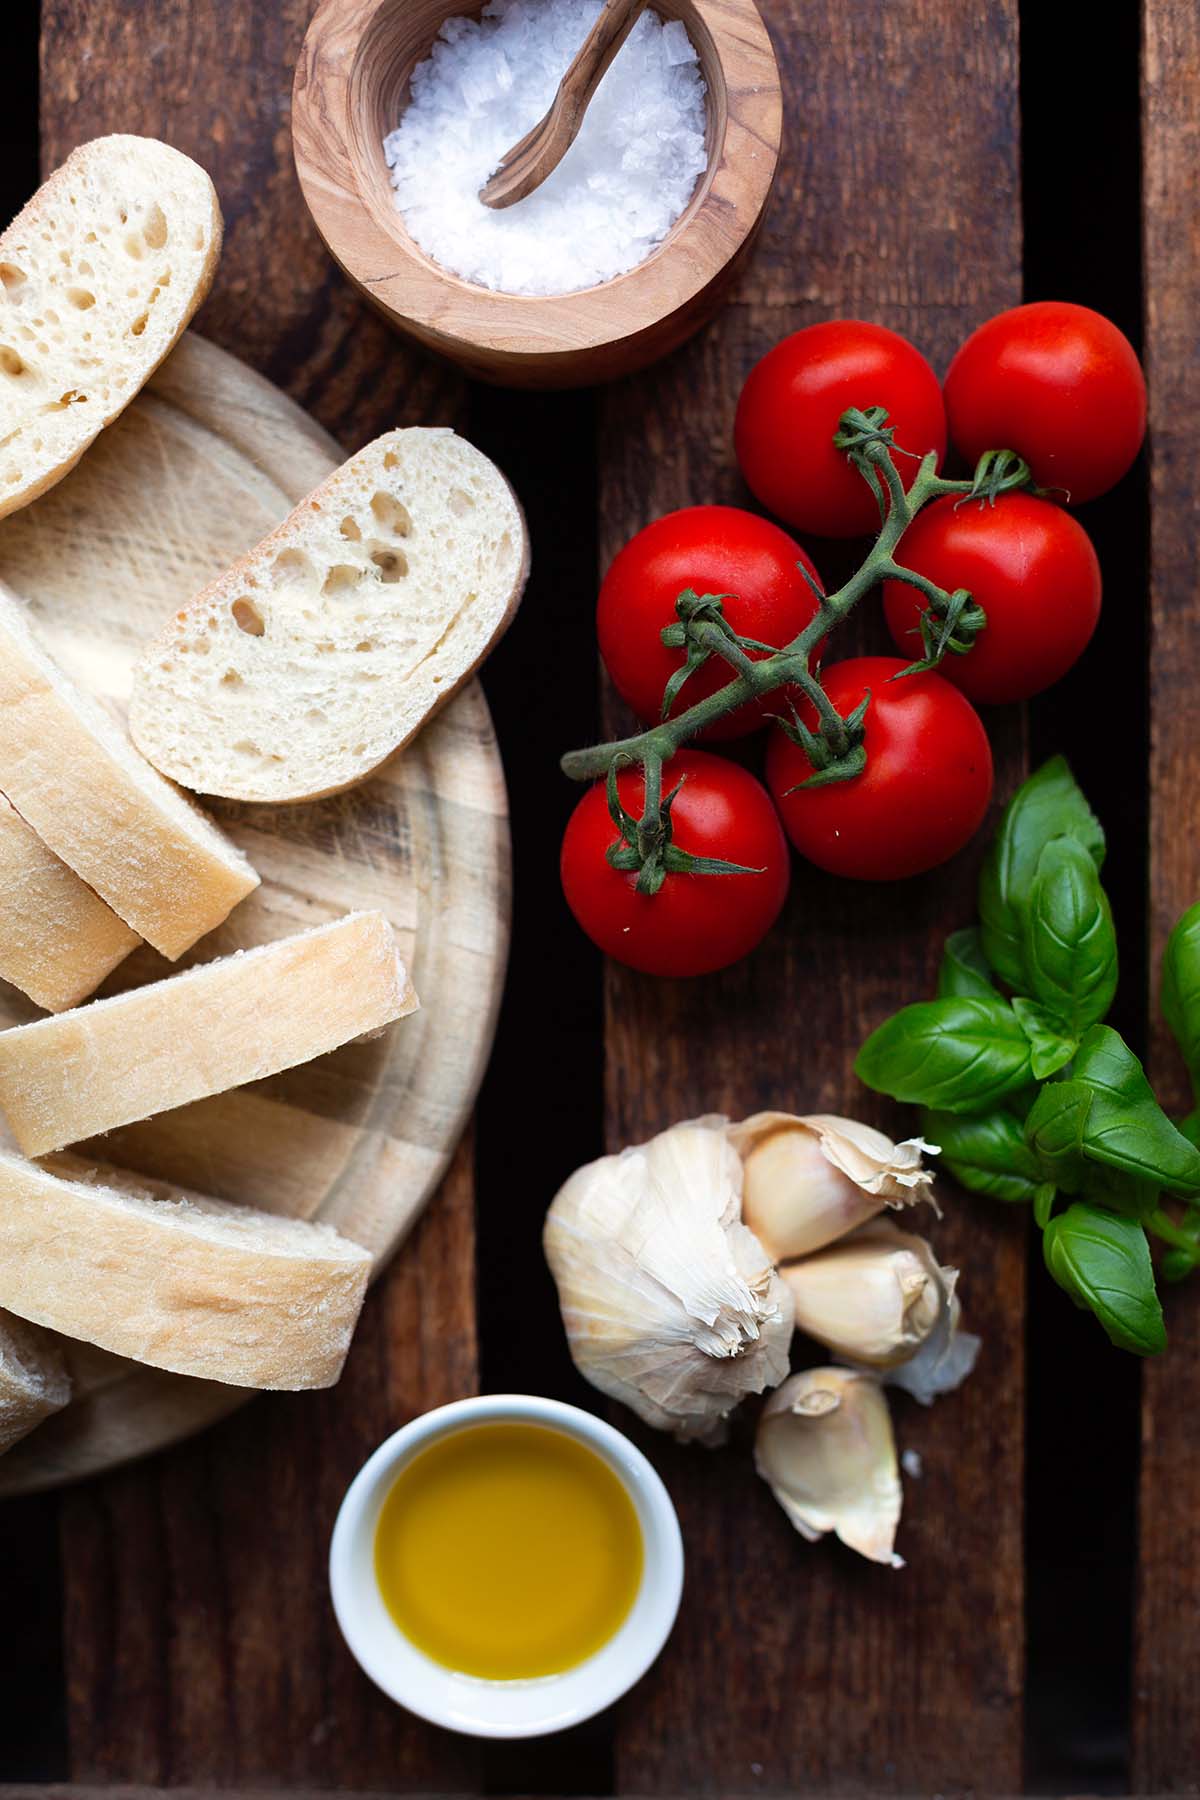 Alle Zutaten für das italienische Bruschetta auf einem dunklen Holzuntergrund. Man findet reife Tomaten, Knoblauch, Basilikum, Olivenöl und Ciabatta Brot